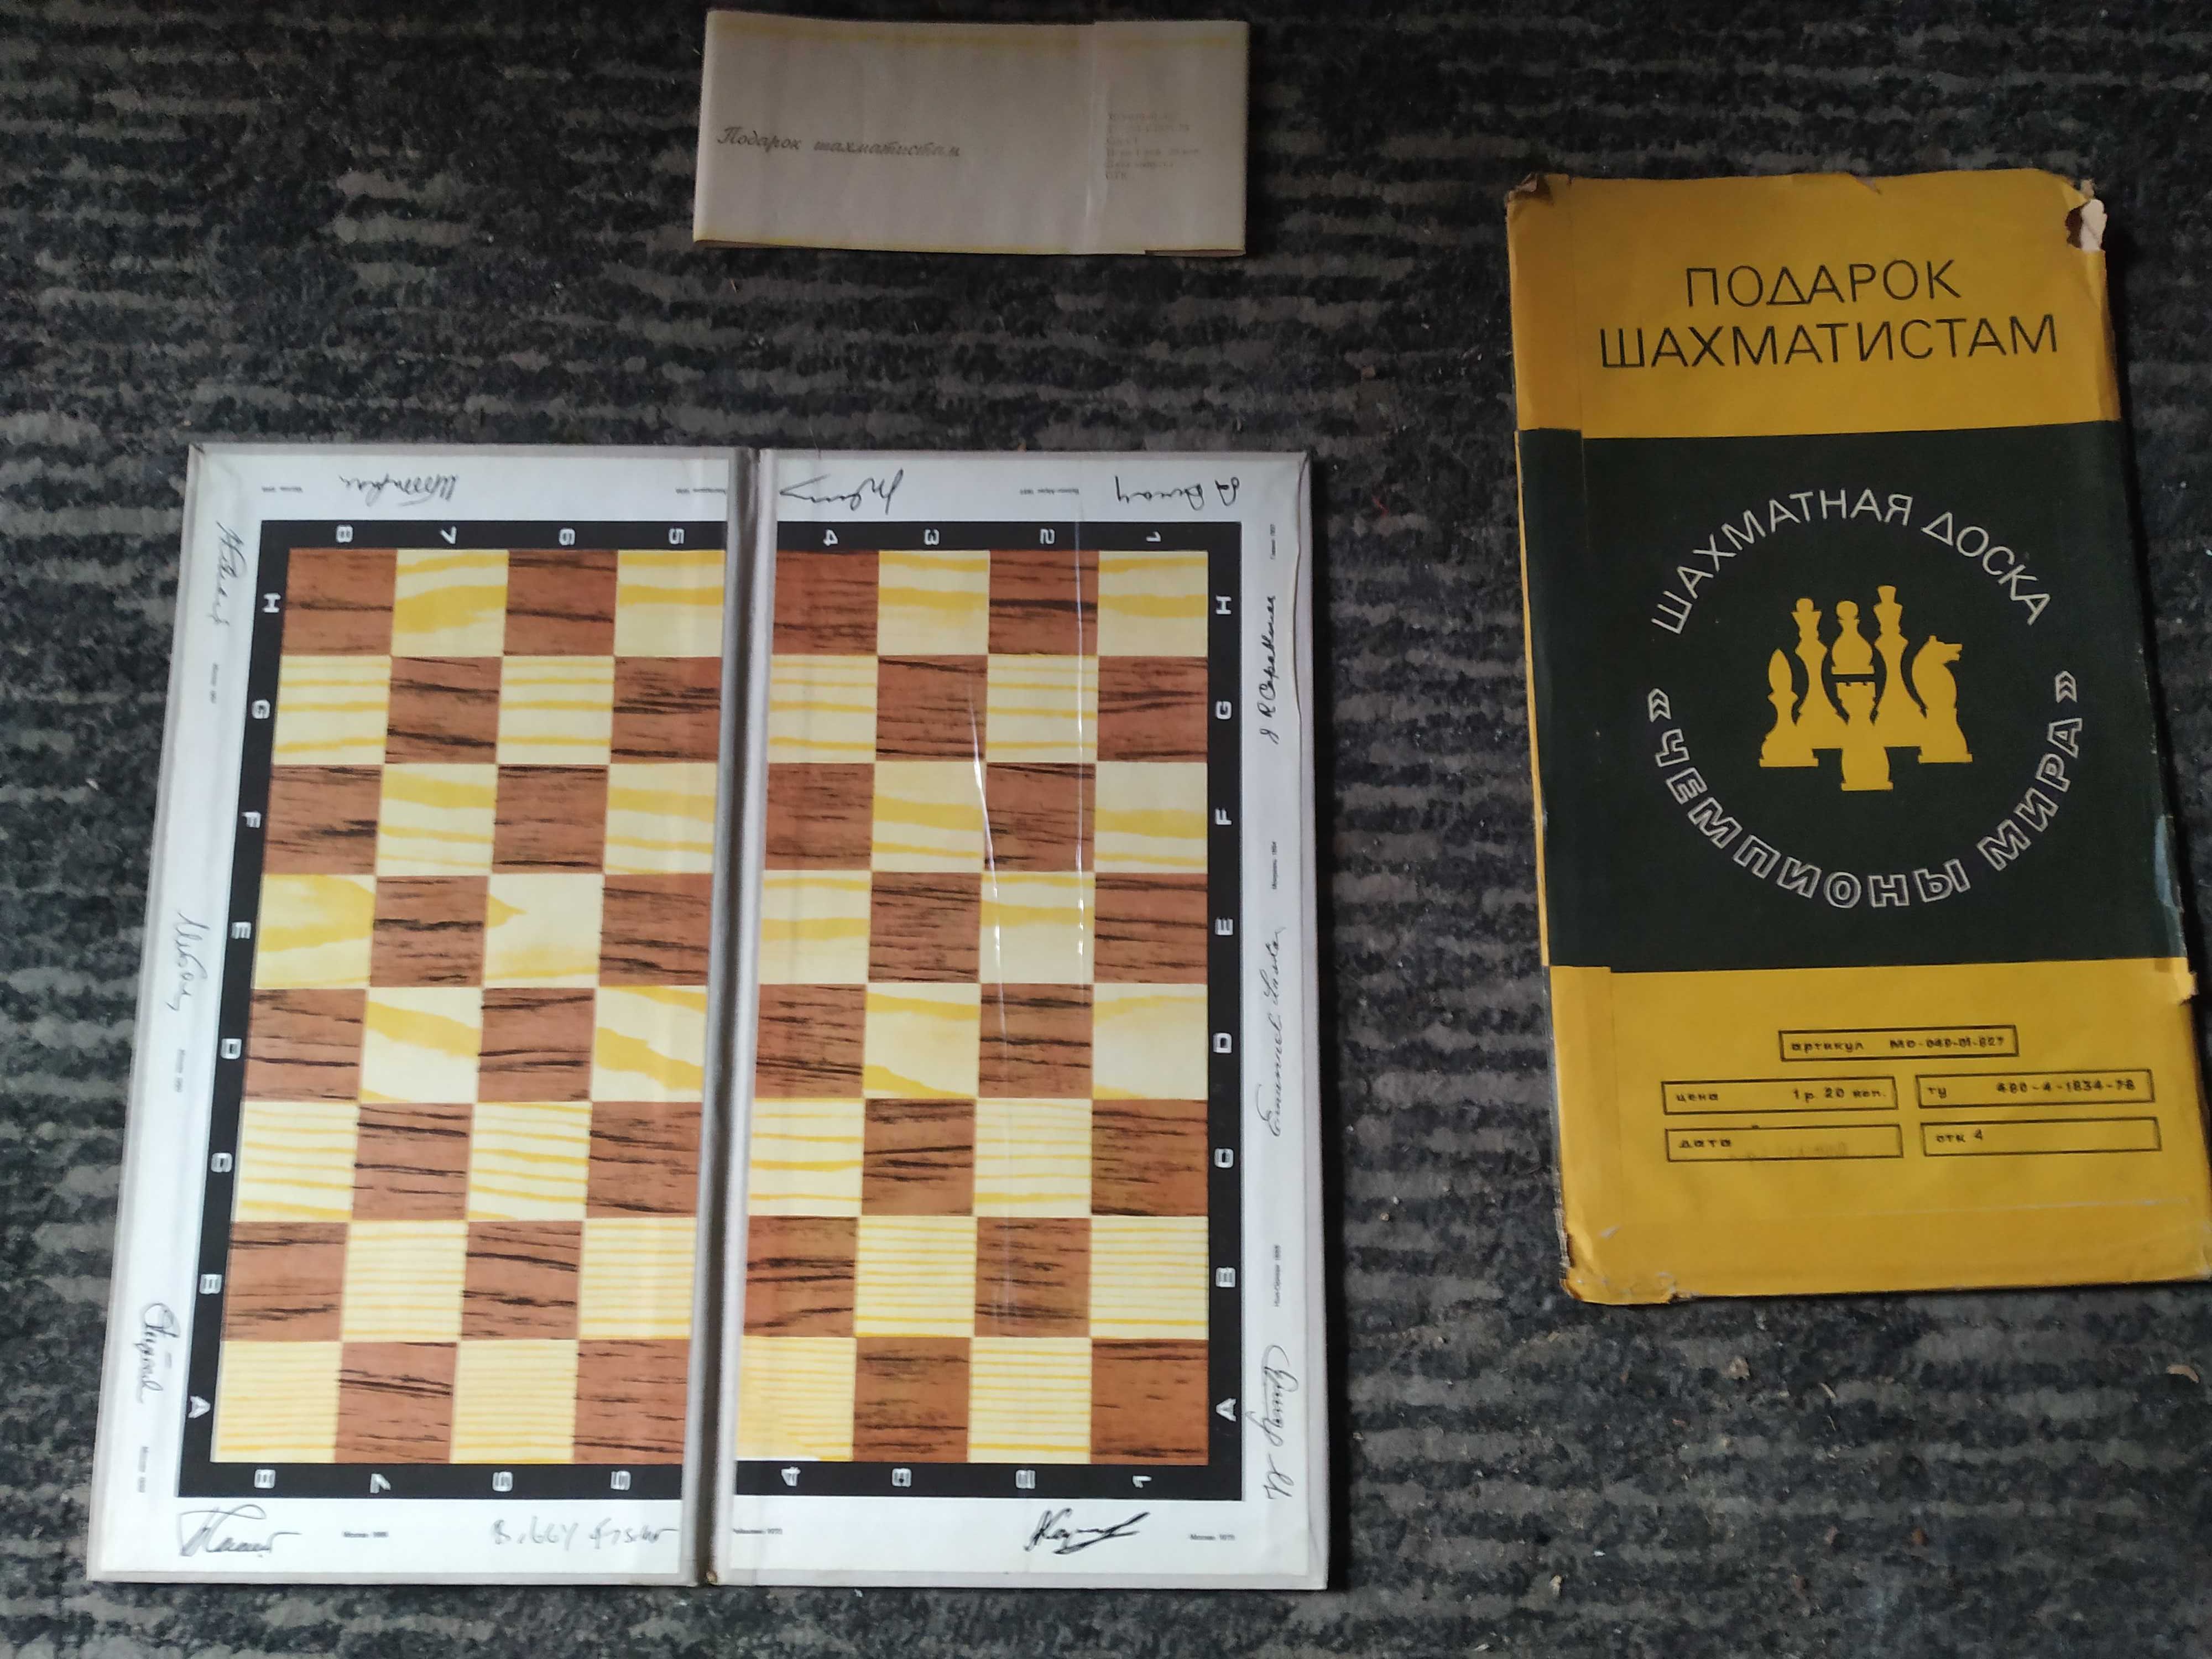 Сувенирная подарочная шахматная доска